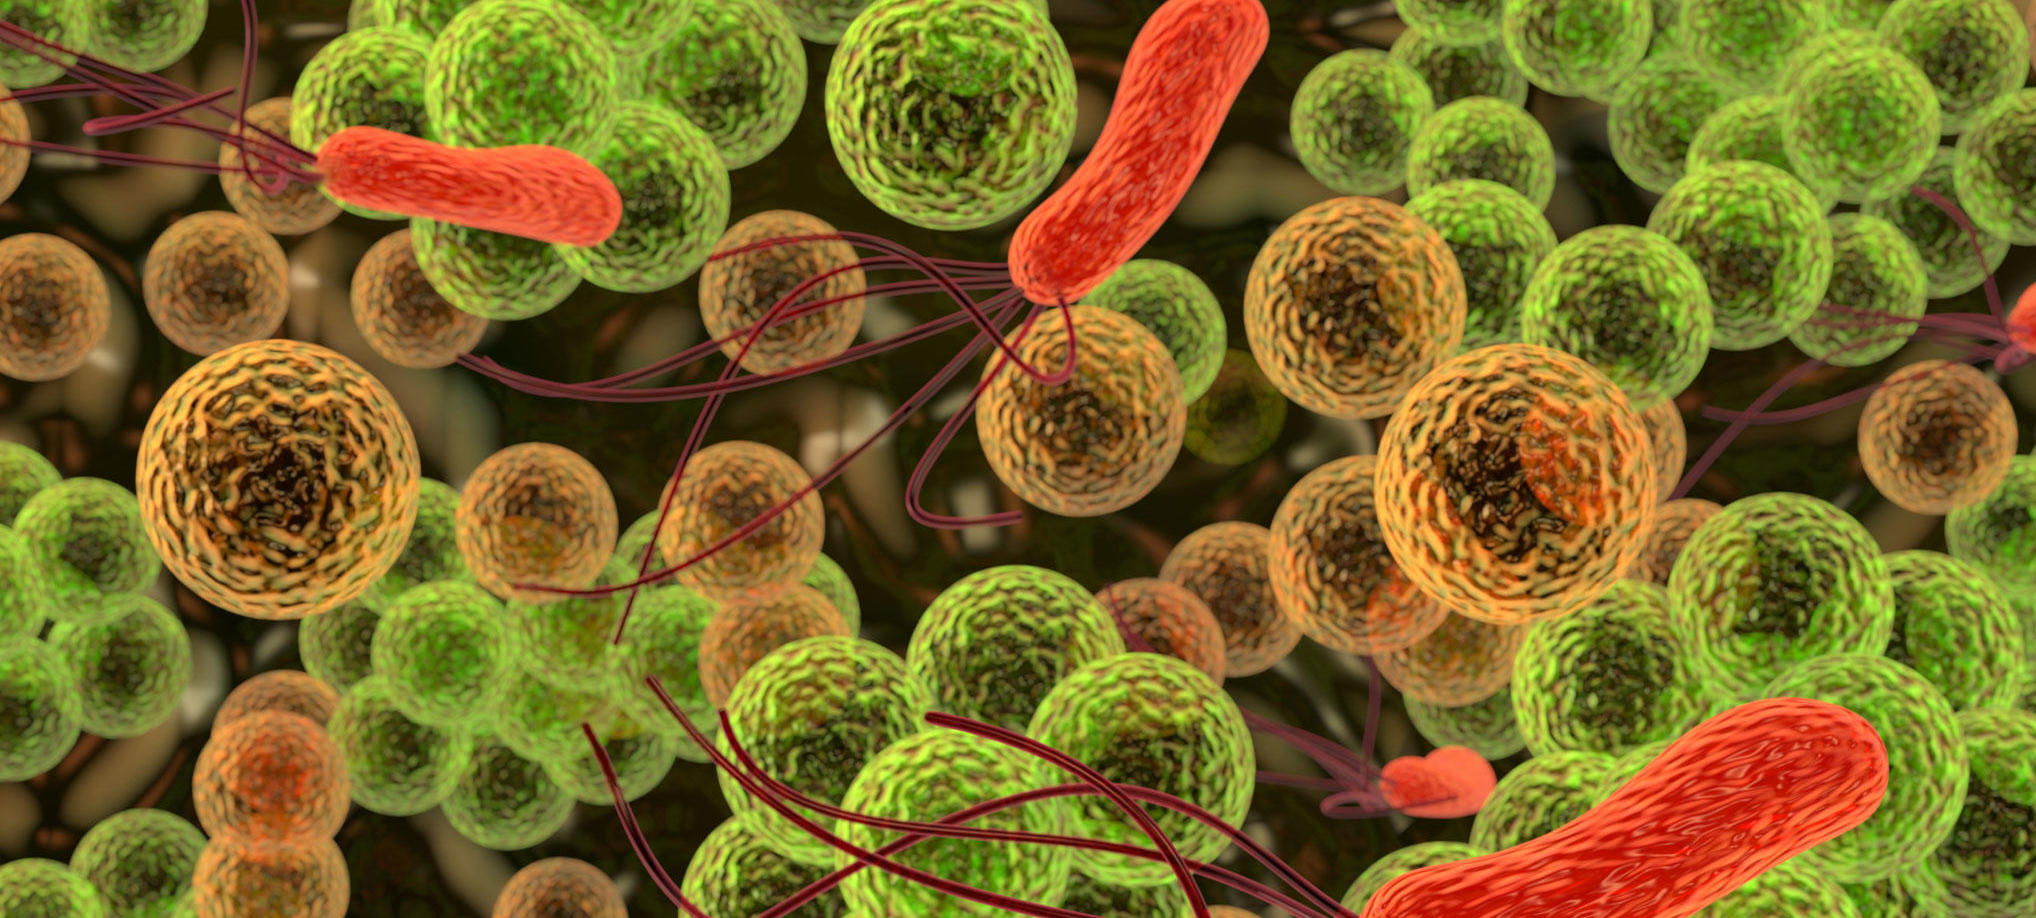 La microbiota regula la respuesta inmunitaria del organismo frente a la enfermedad inflamatoria inte...